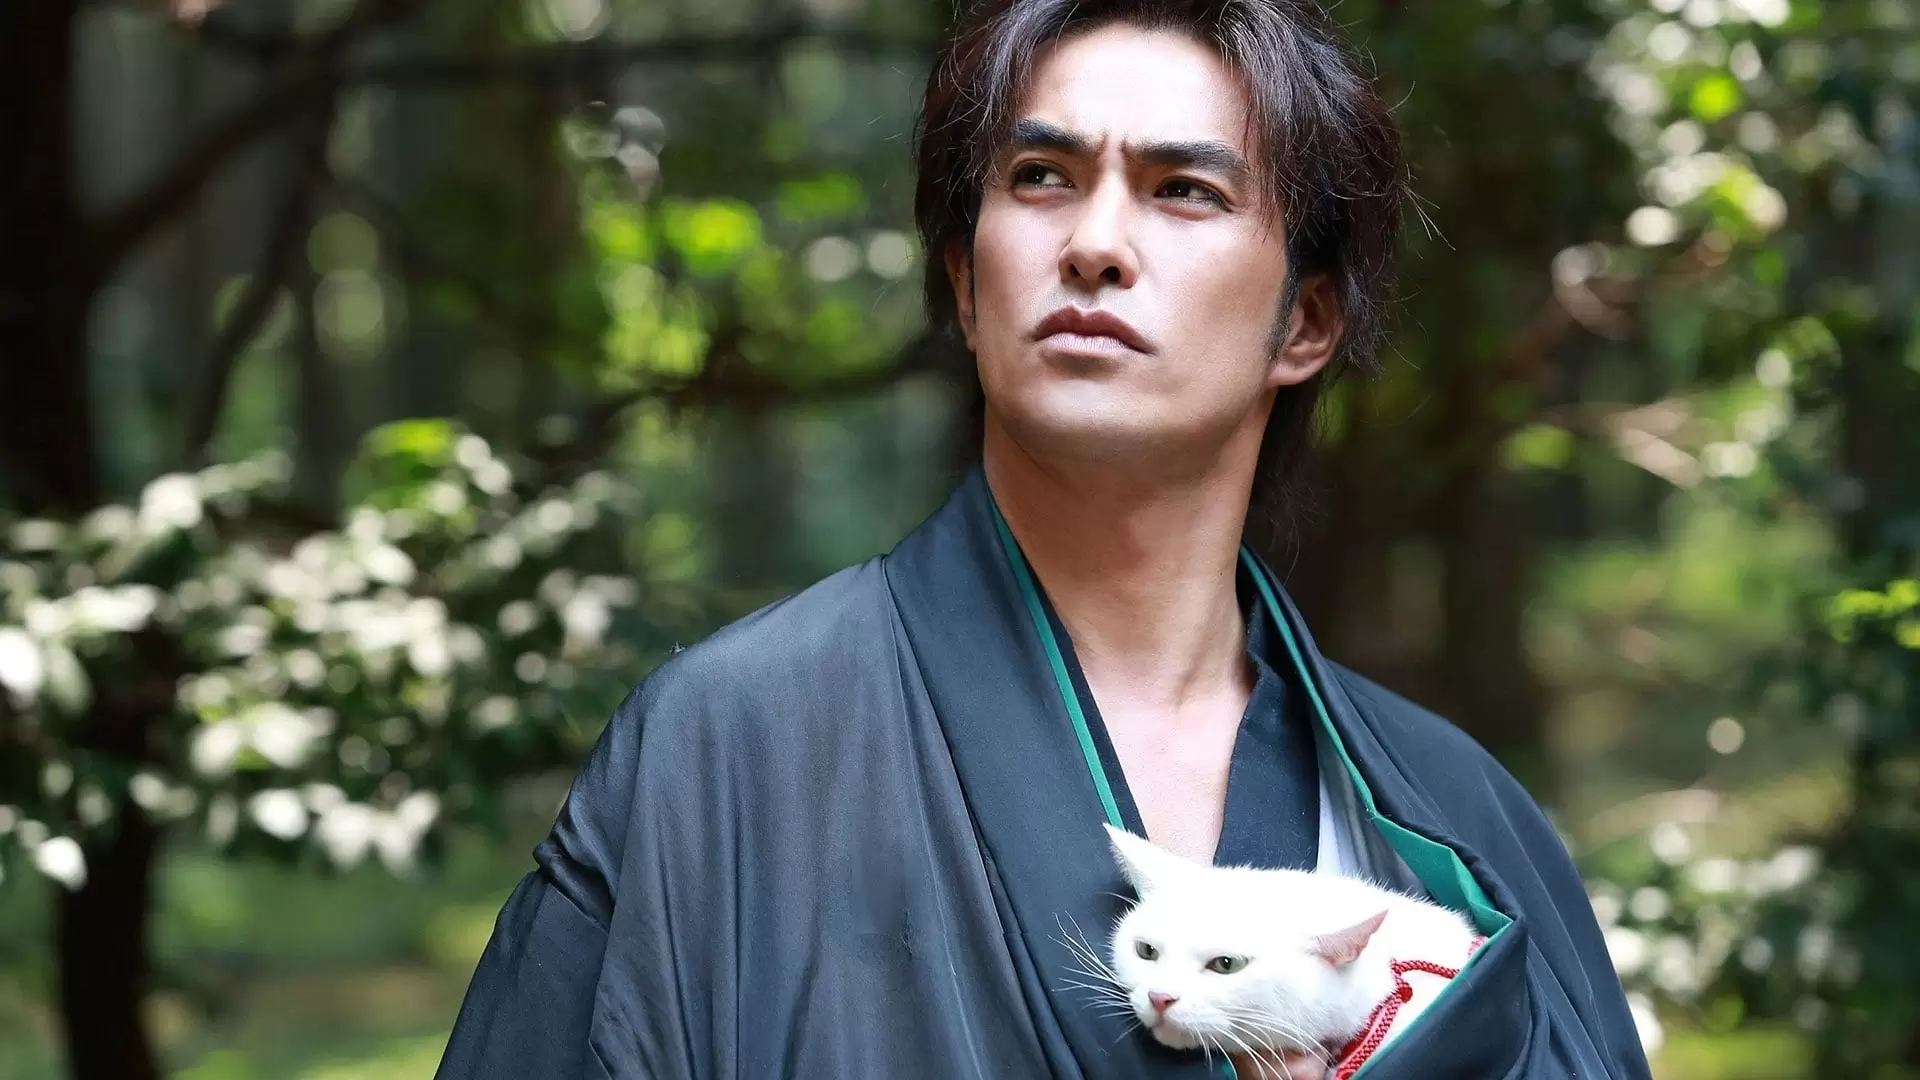 دانلود فیلم Samurai Cat 2014